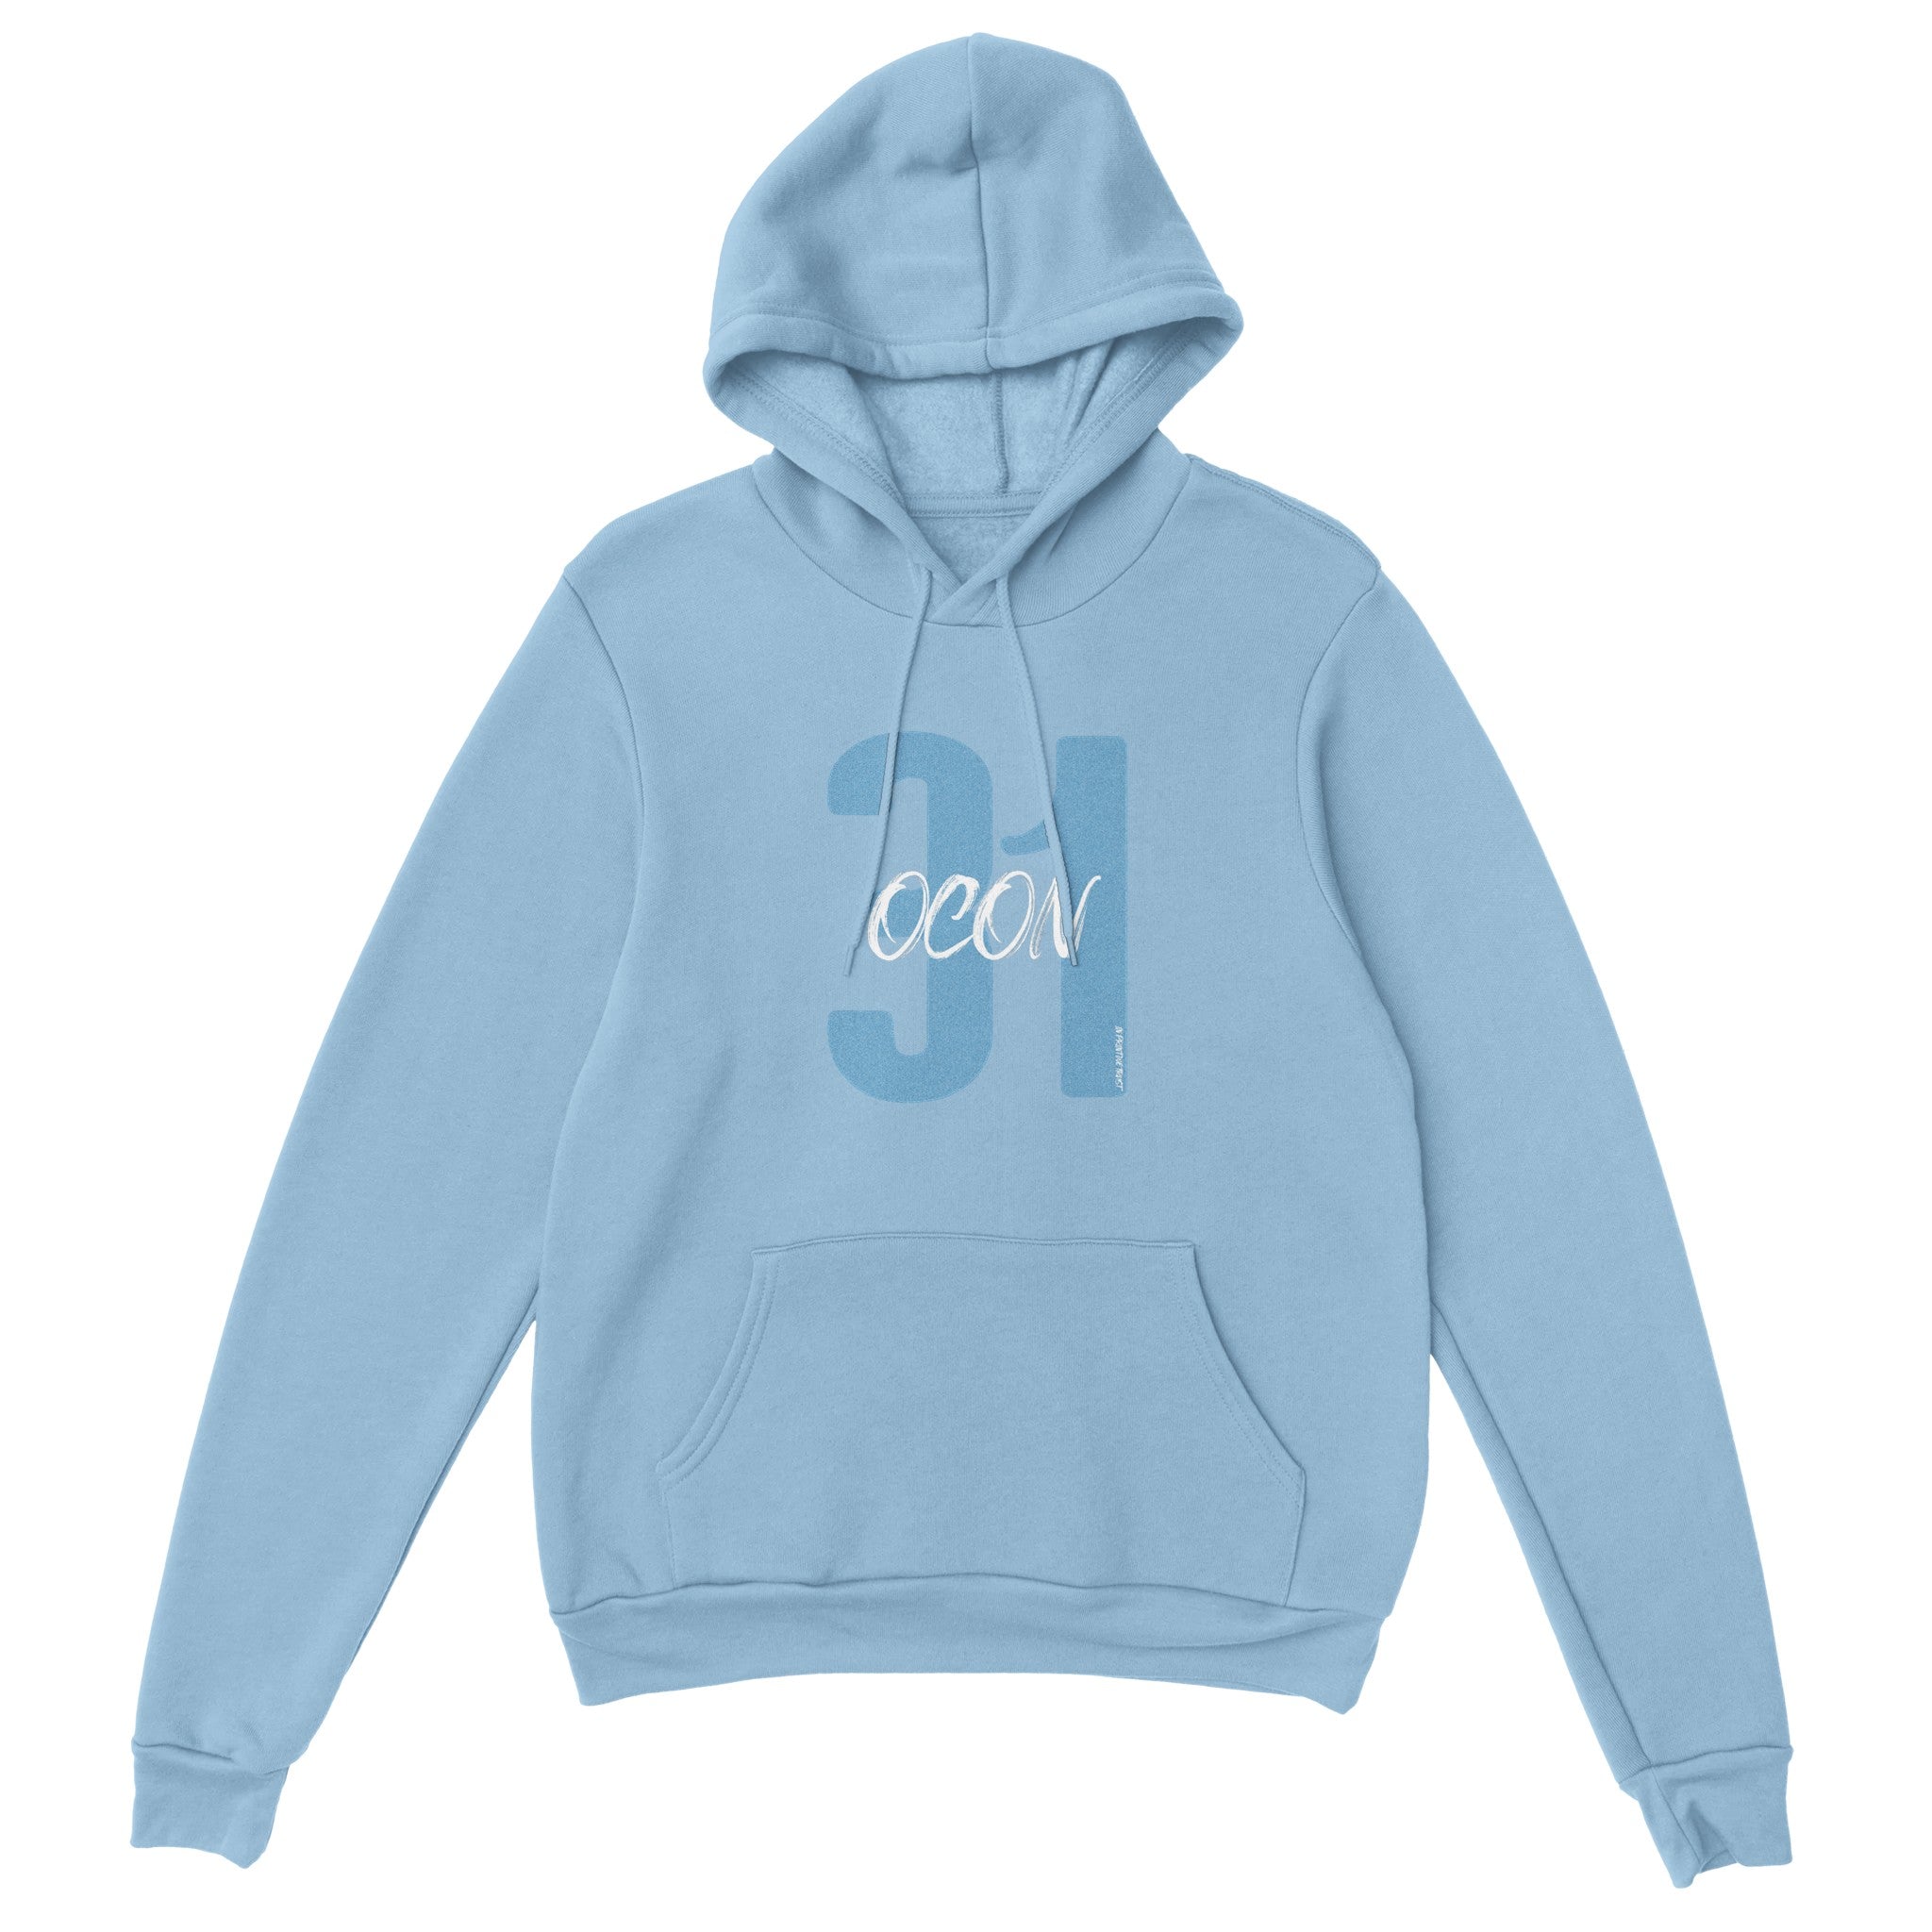 'Ocon 31' hoodie - In Print We Trust